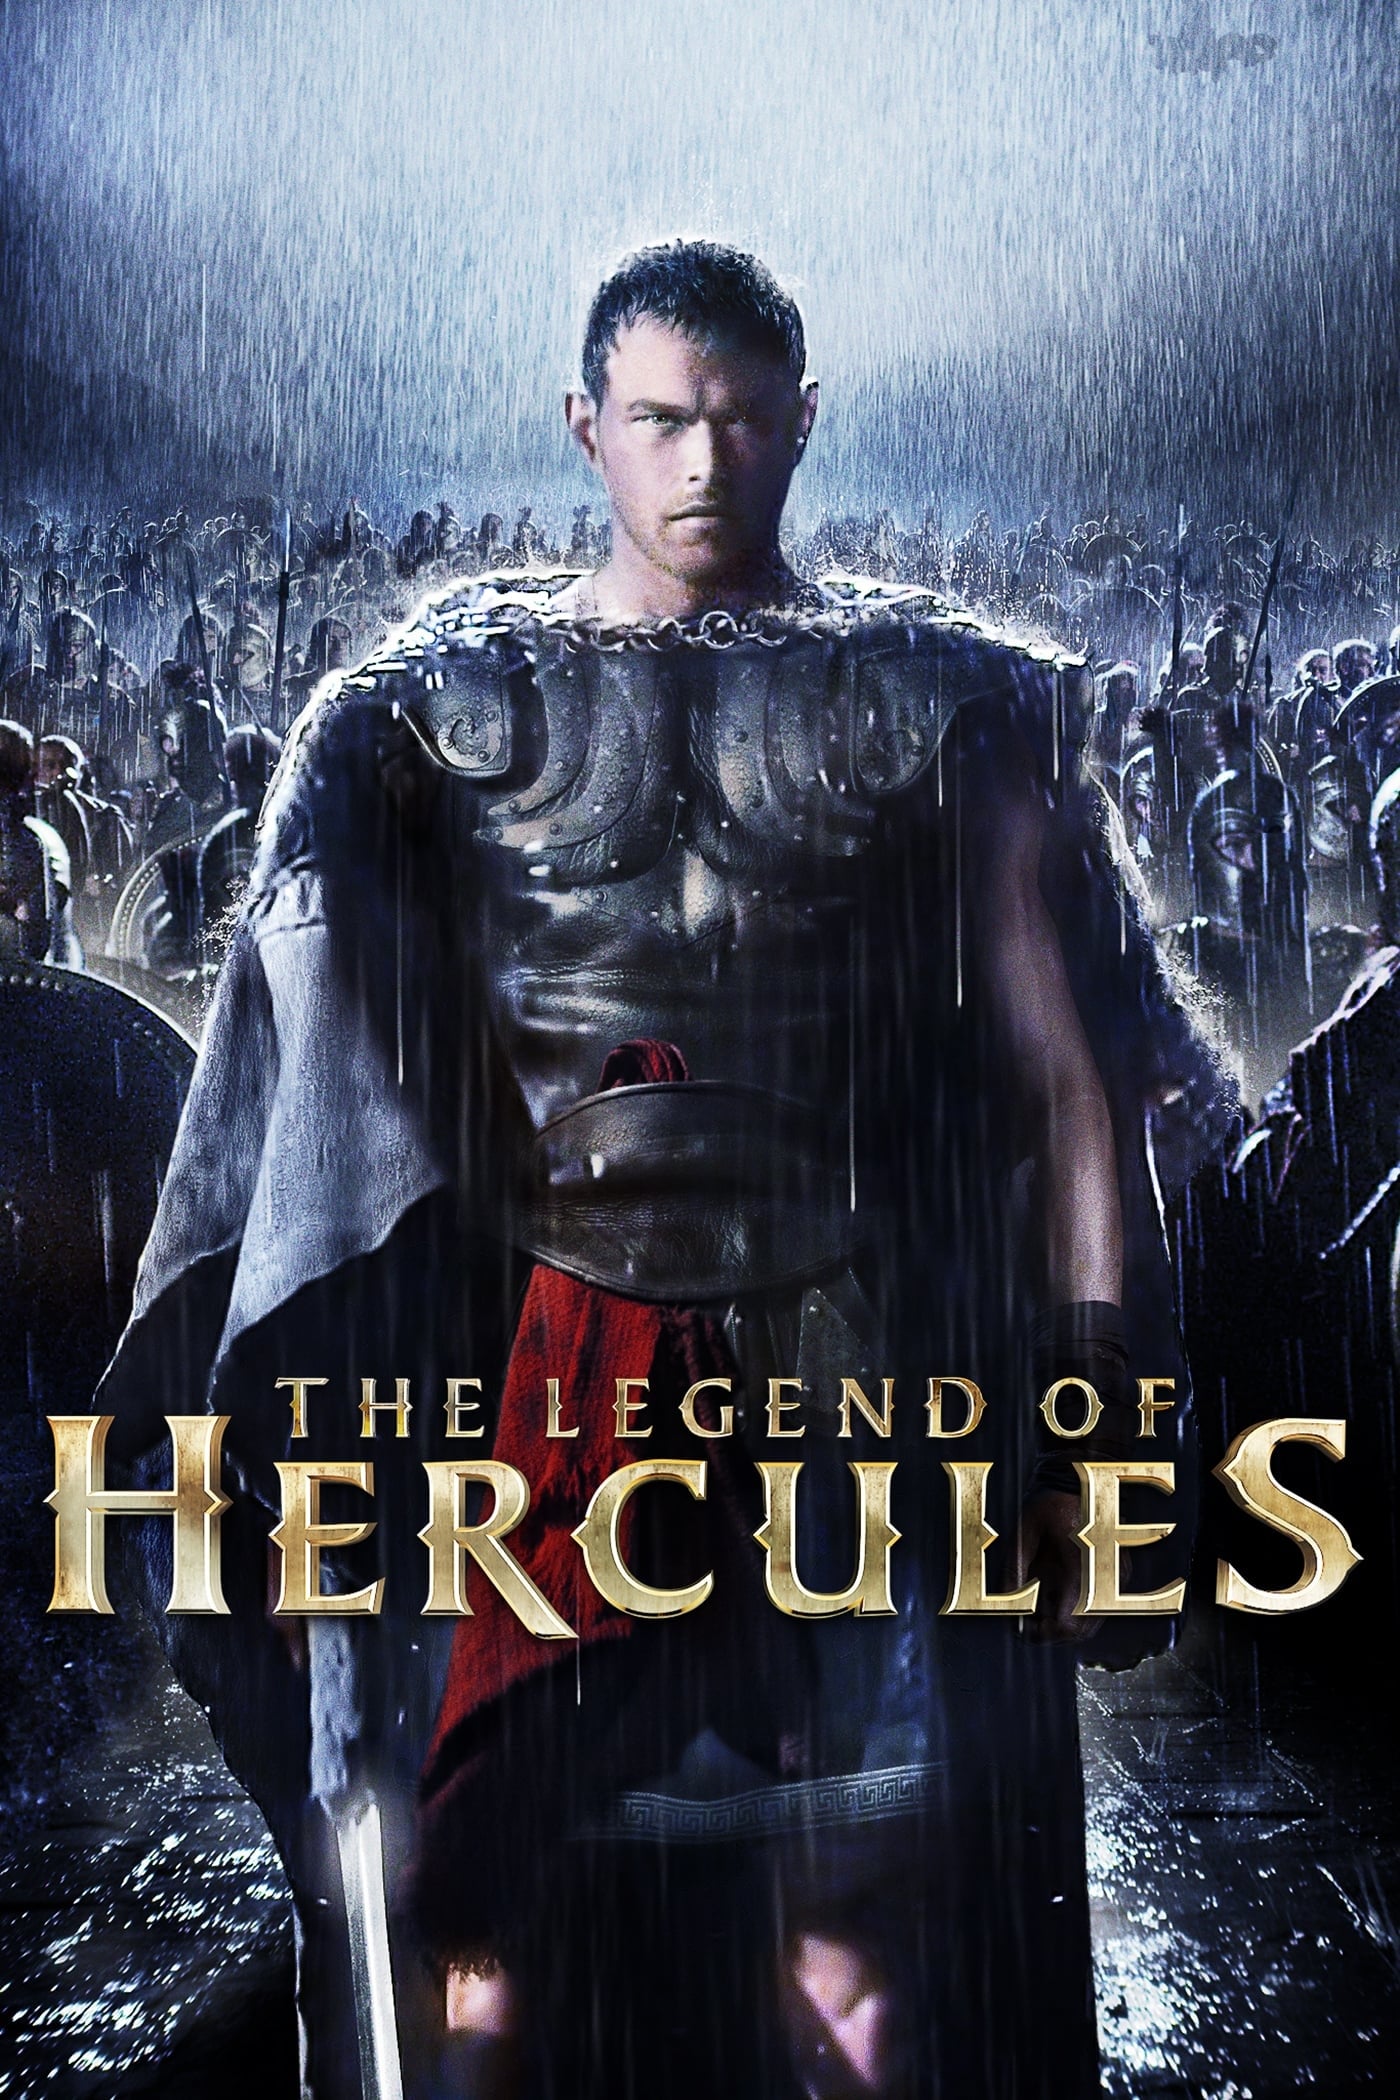 Caratula de HERCULES: THE LEGEND BEGINS (Hercules el origen de la leyenda) 